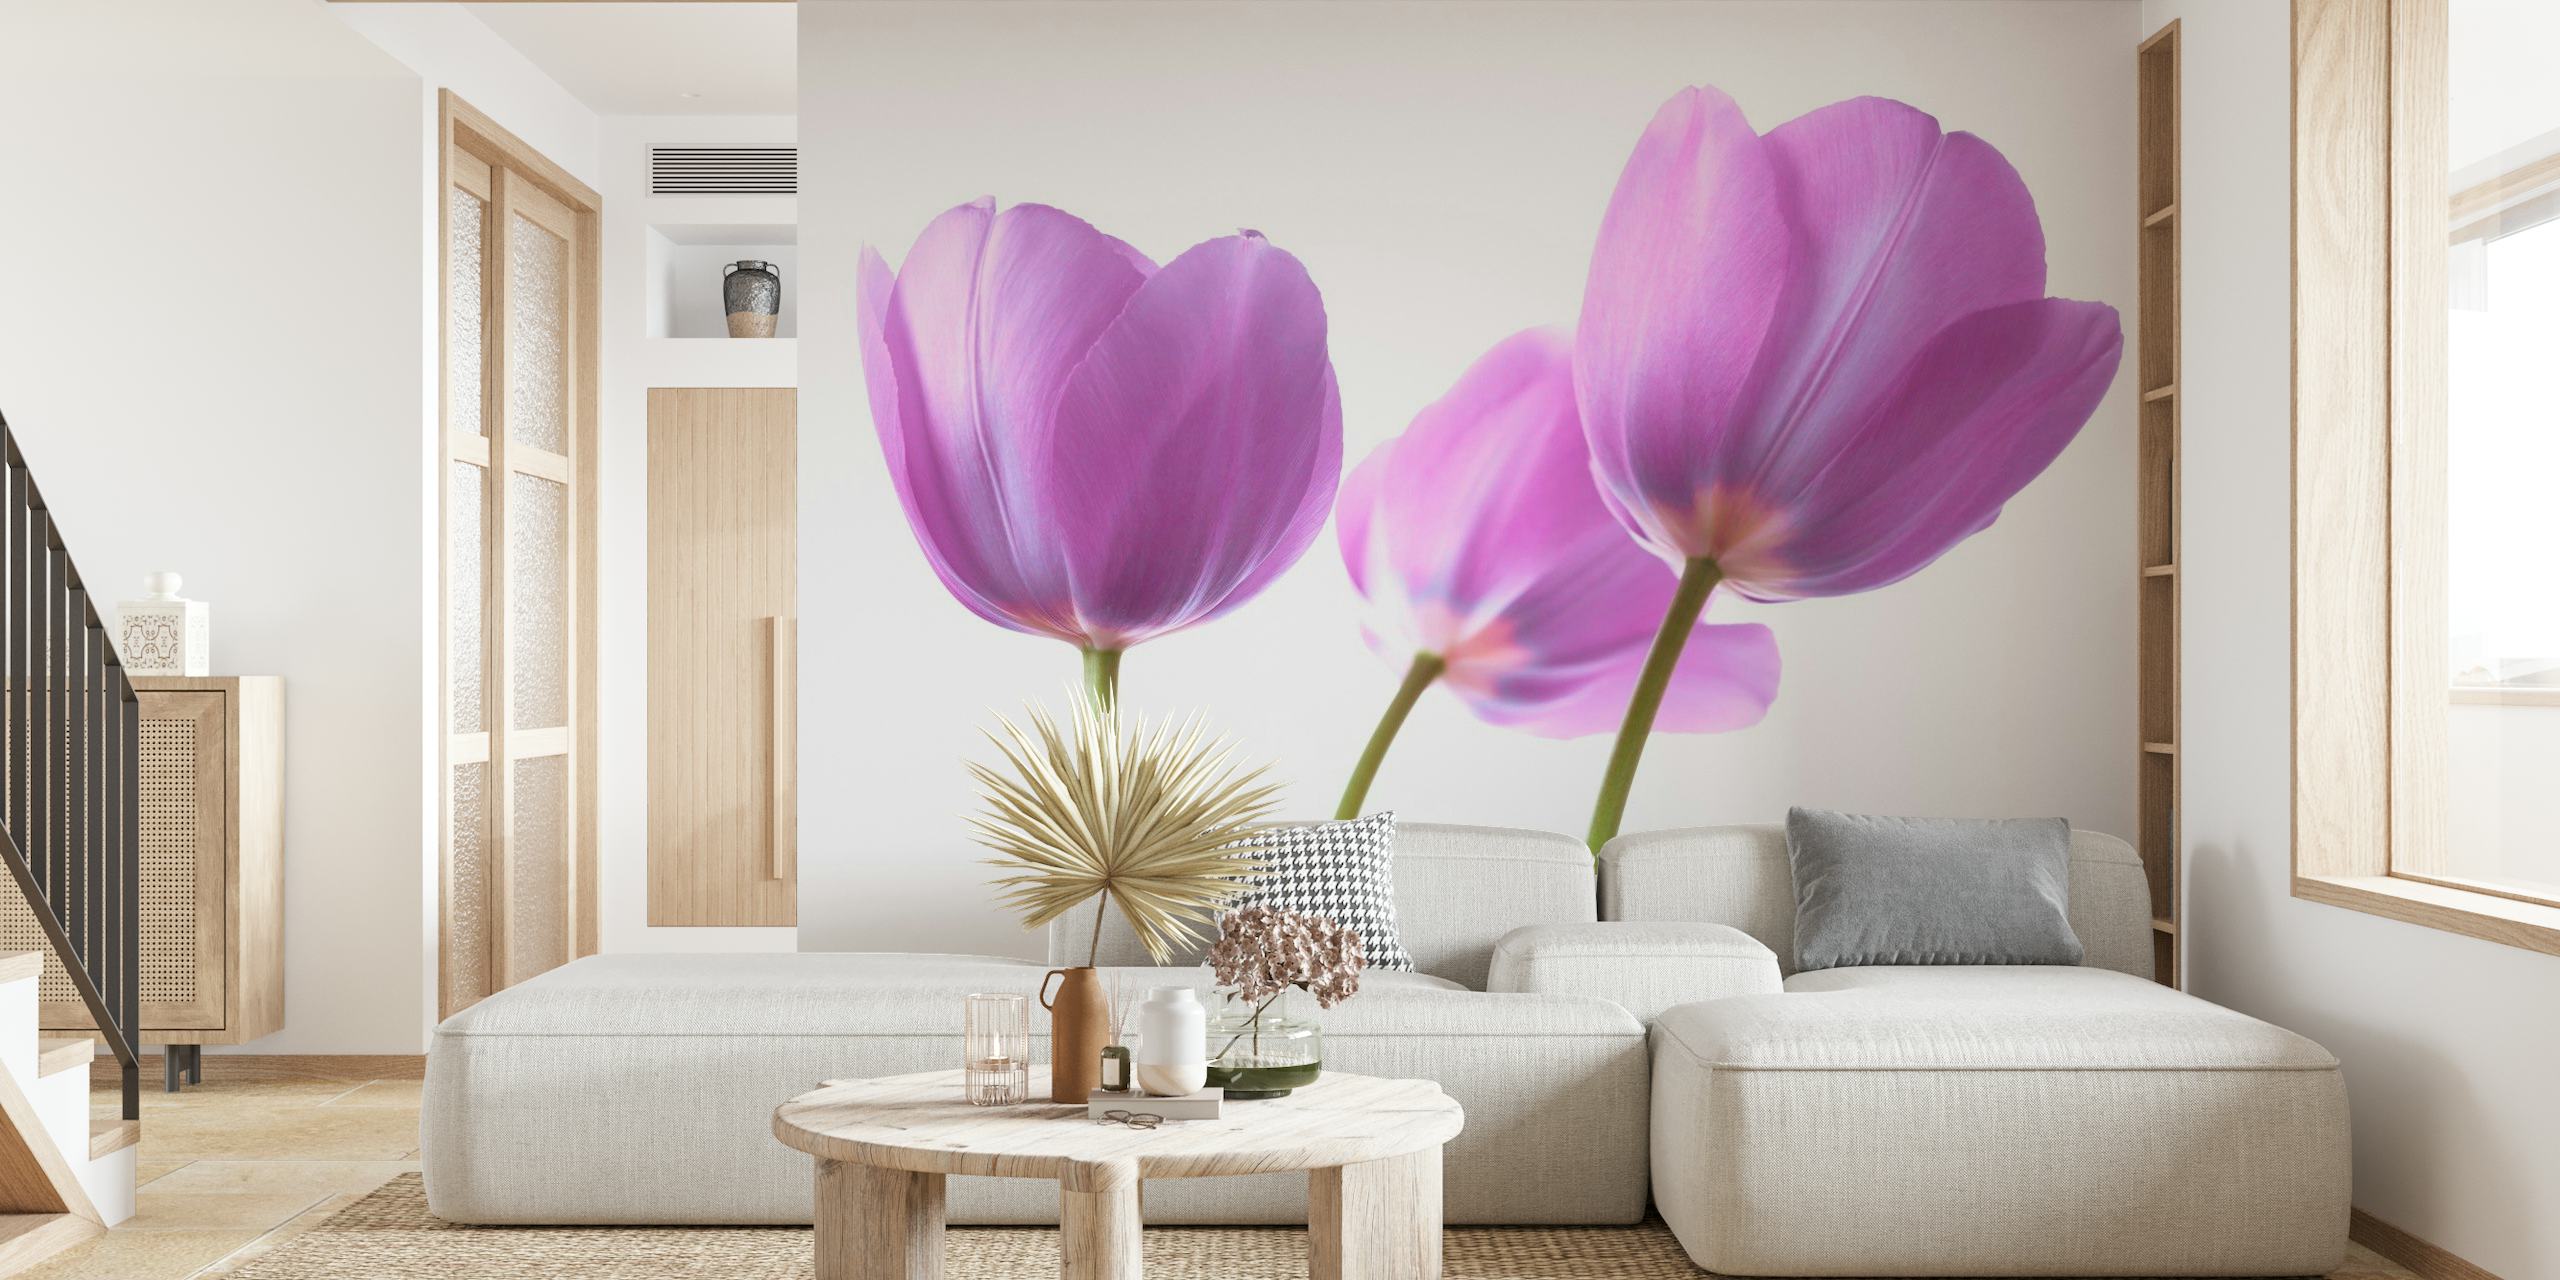 Fotomural vinílico de parede Par de tulipas roxas em fundo branco